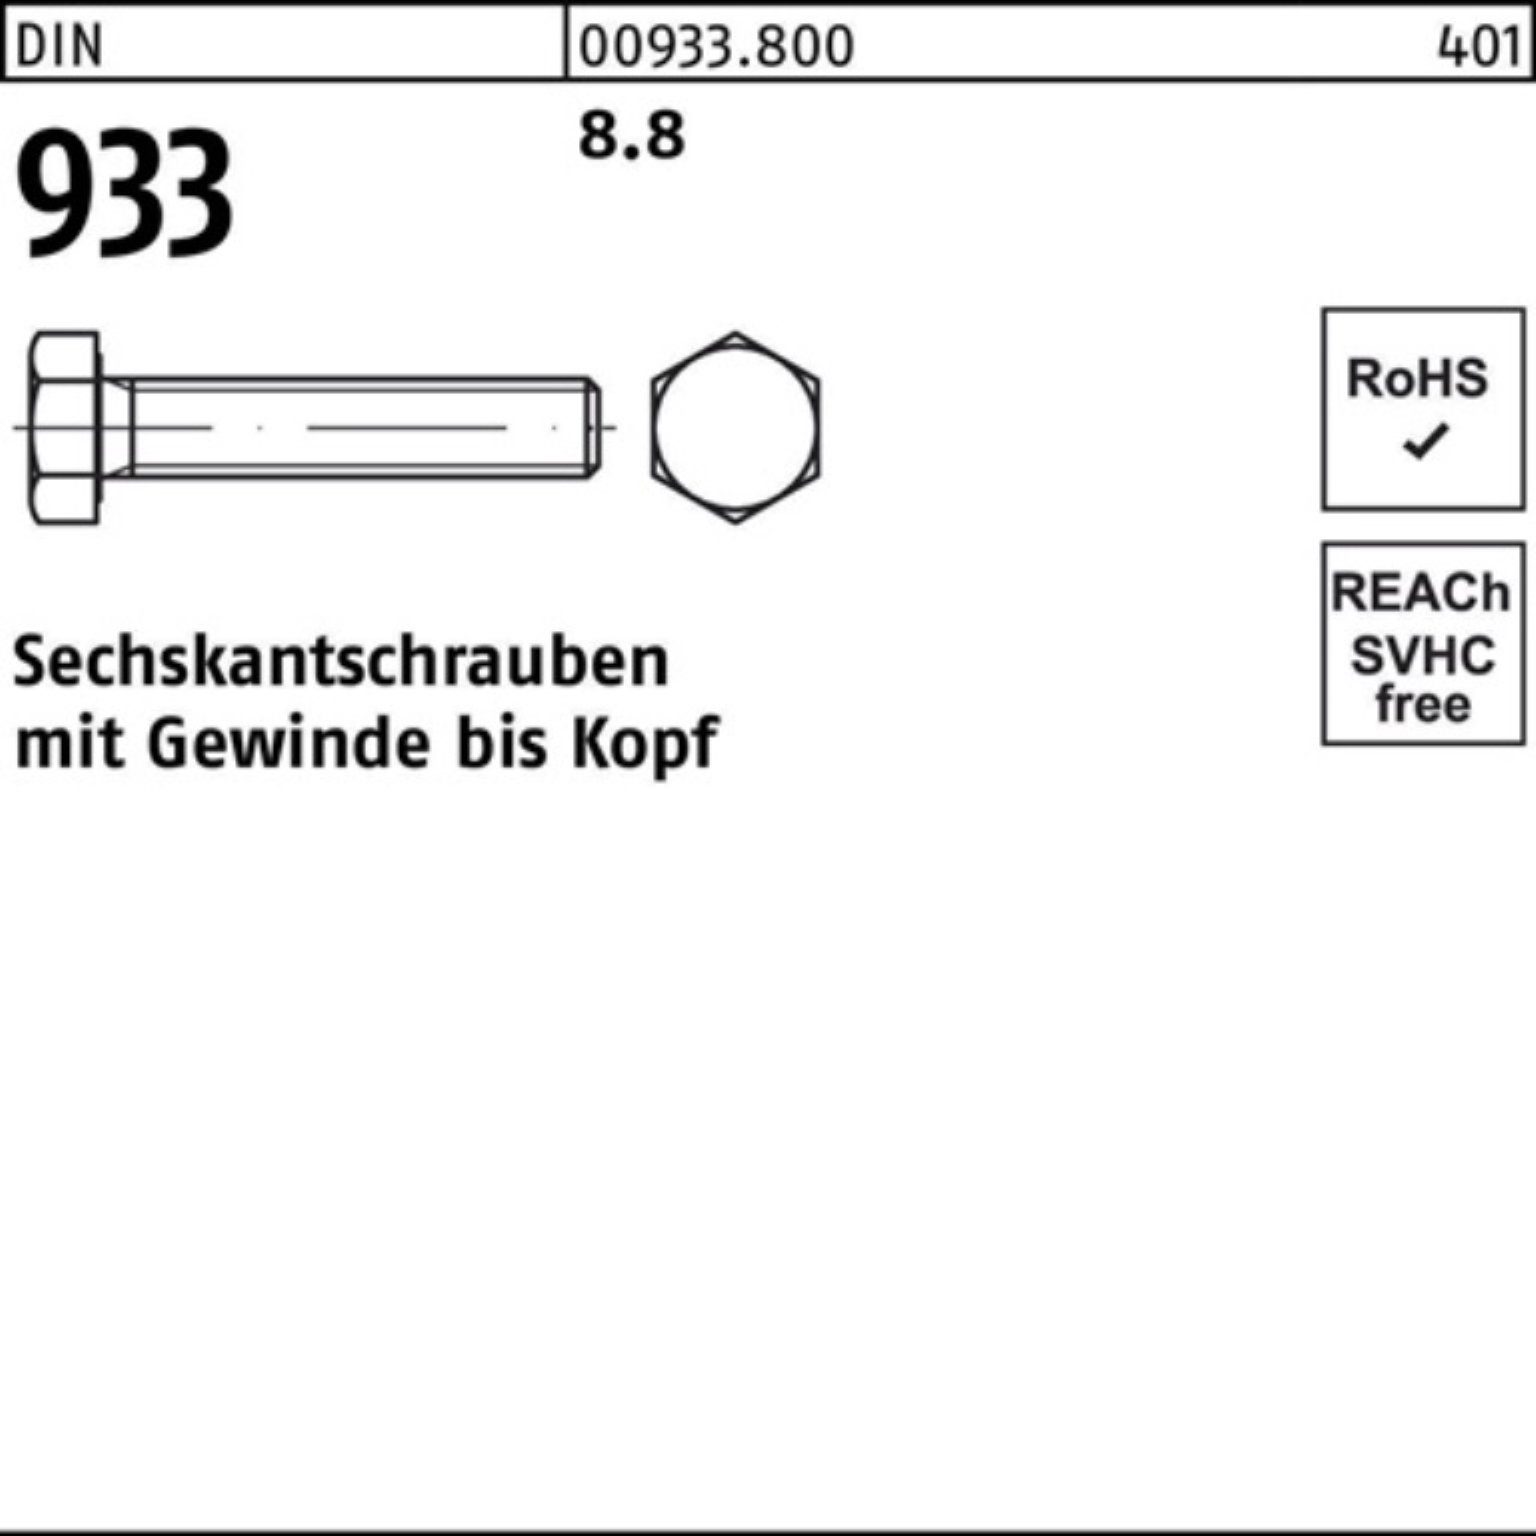 Reyher Sechskantschraube 100er Pack Sechskantschraube 25 8.8 VG 80 Stück 933 933 DIN DIN M20x